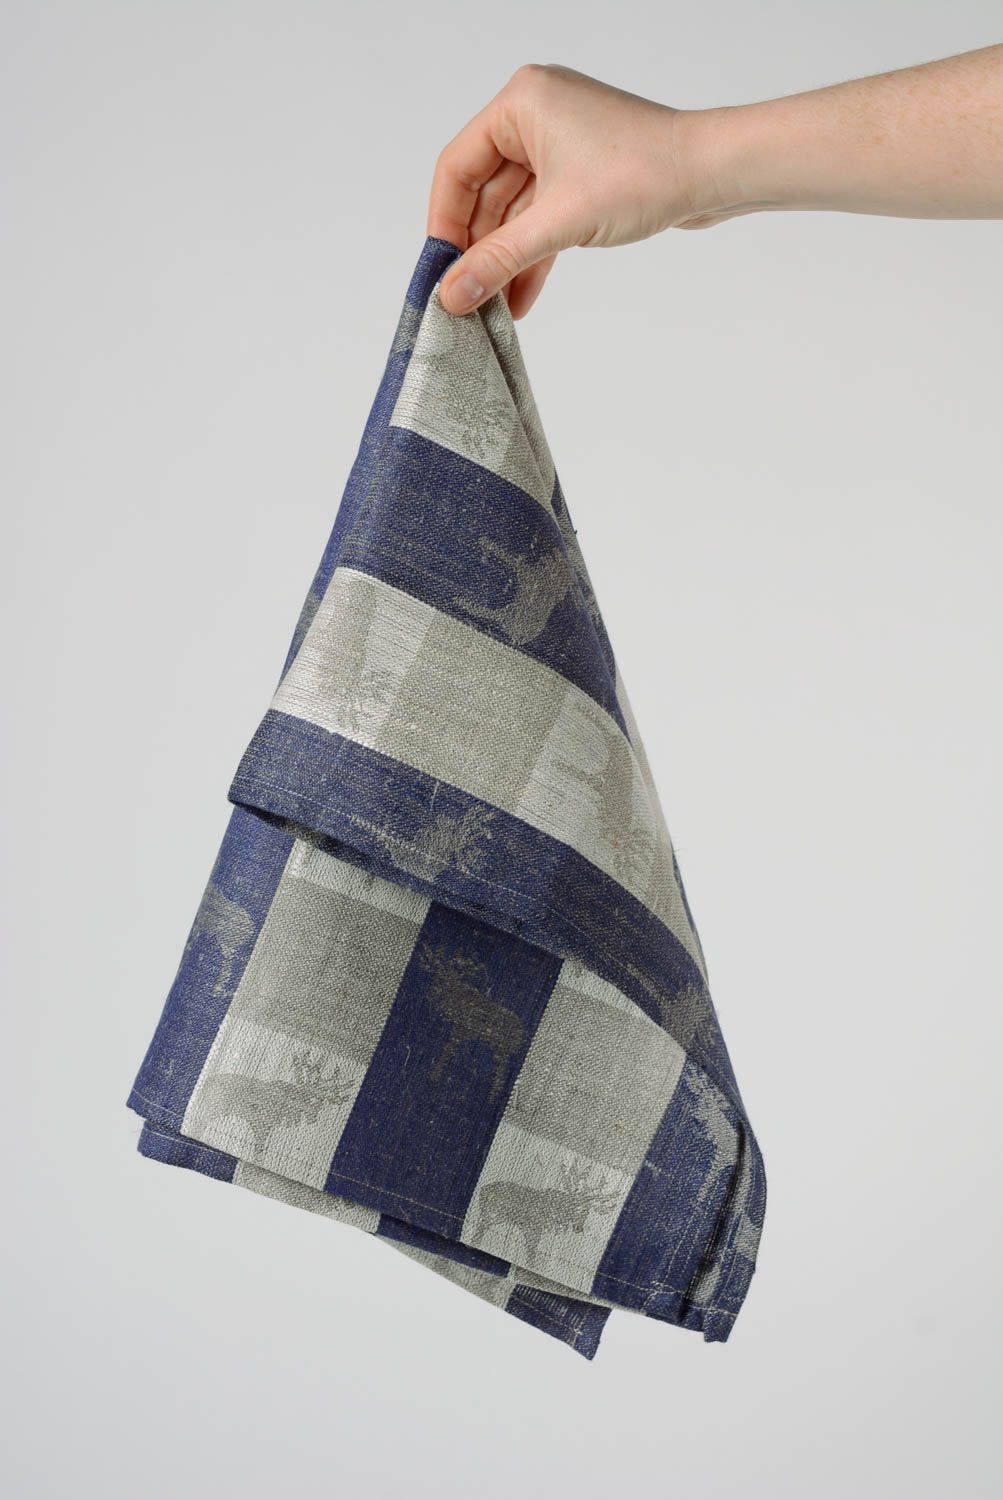 Кухонное полотенце из натуральной льняной ткани ручной работы красивое для дома фото 4